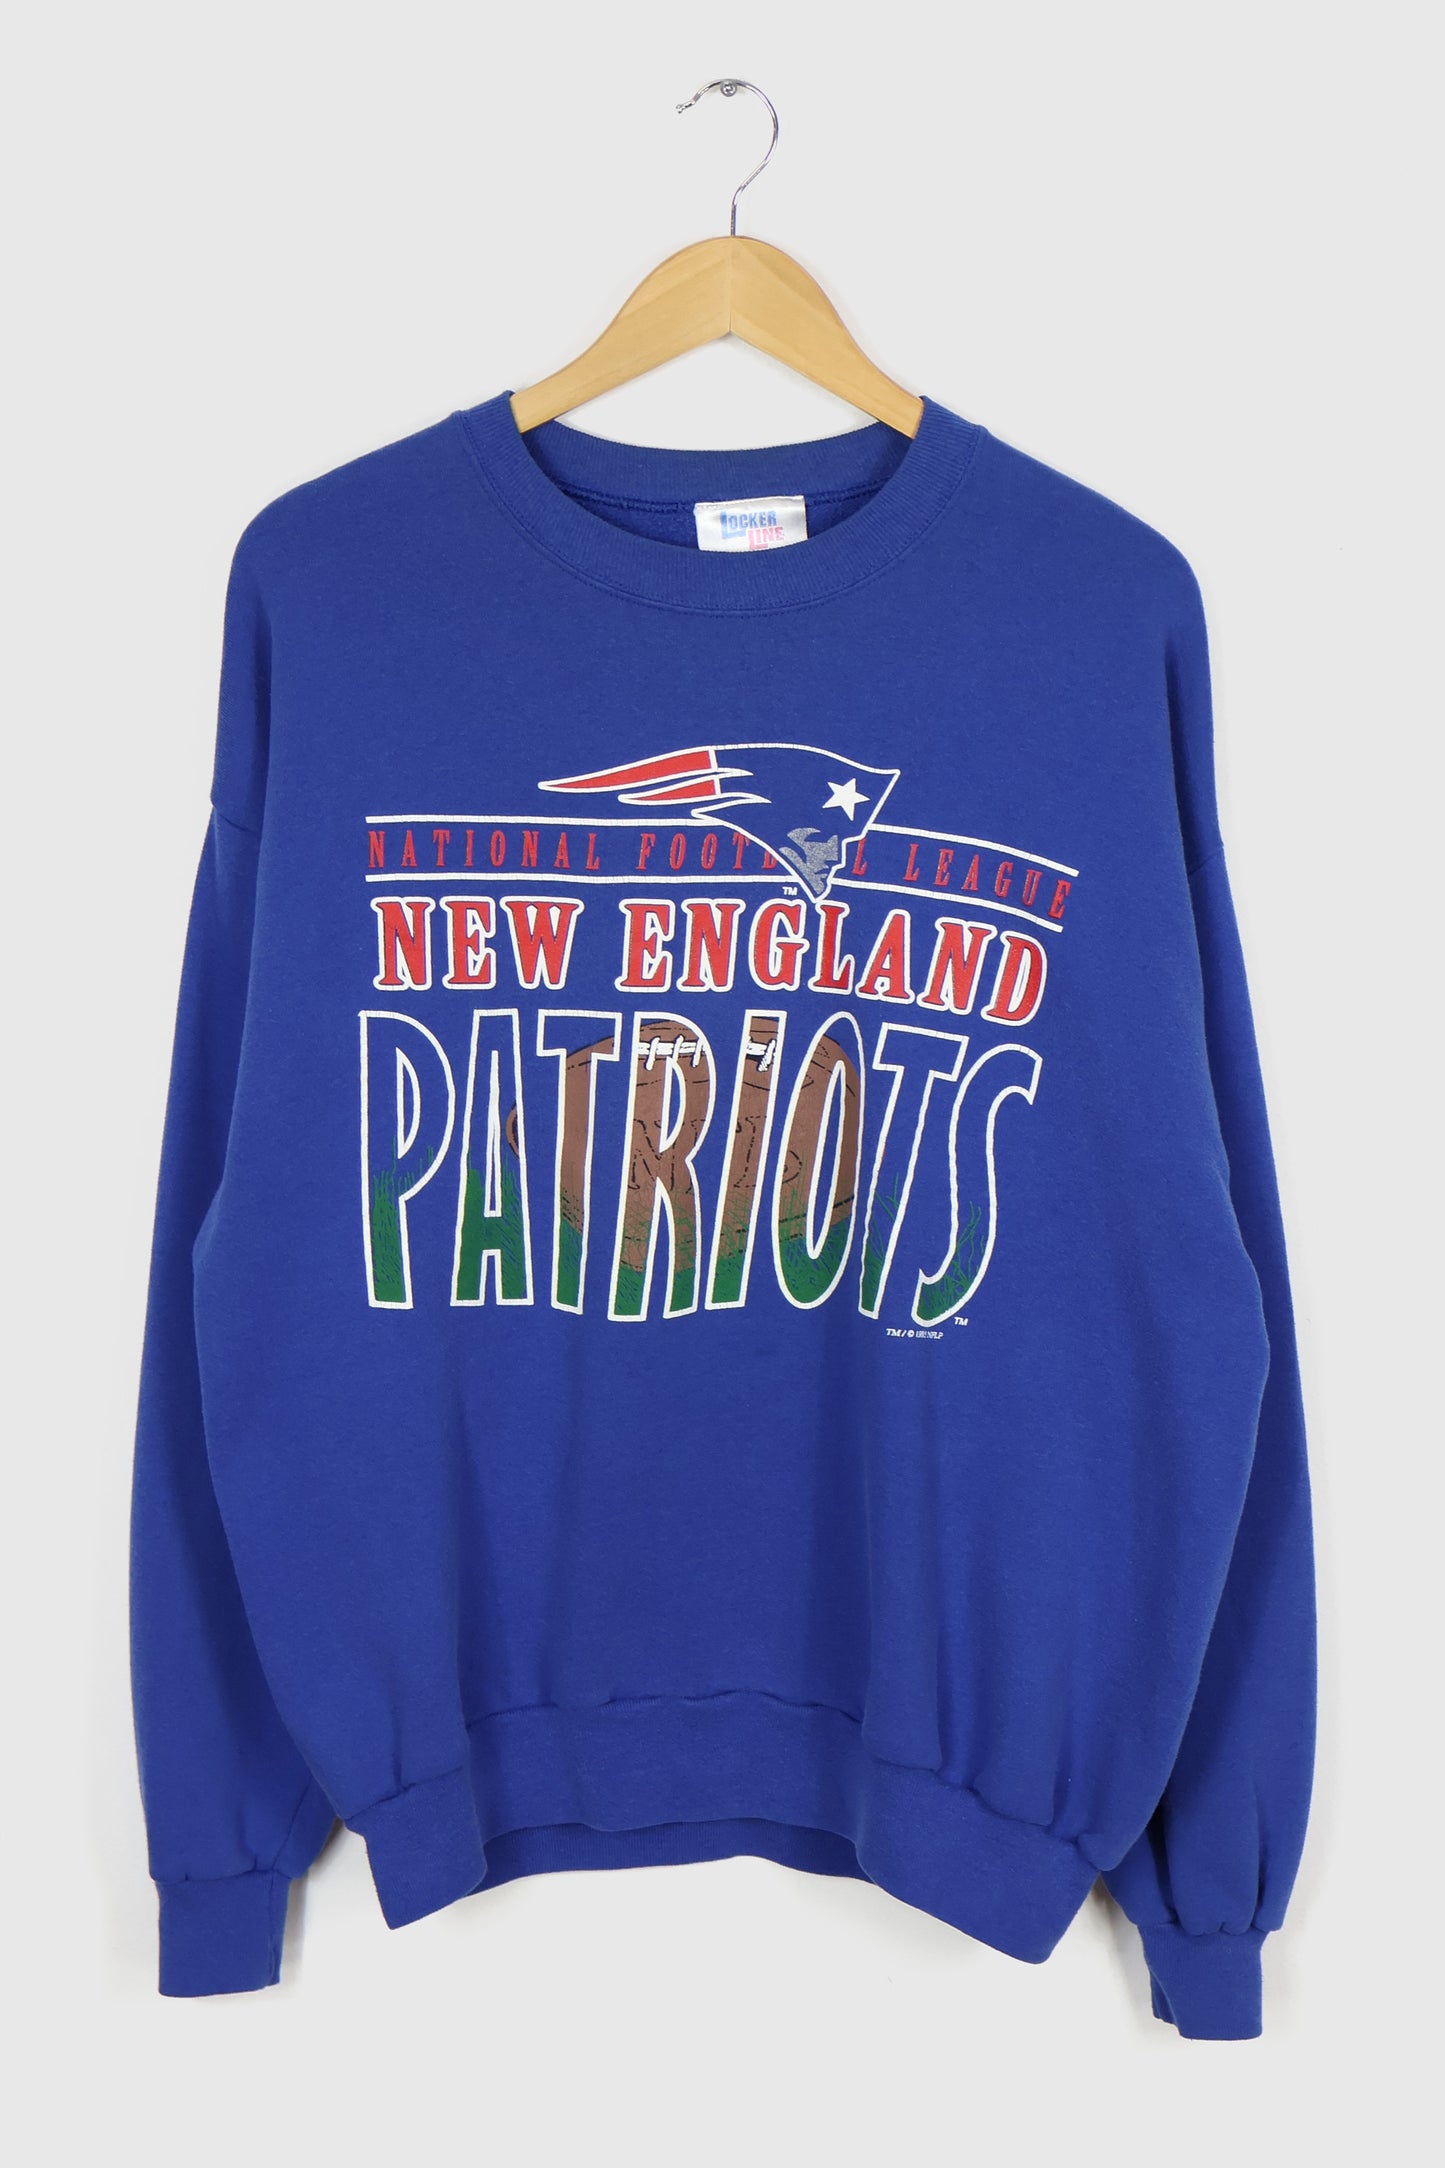 Vintage 1995 New England Patriots Crewneck